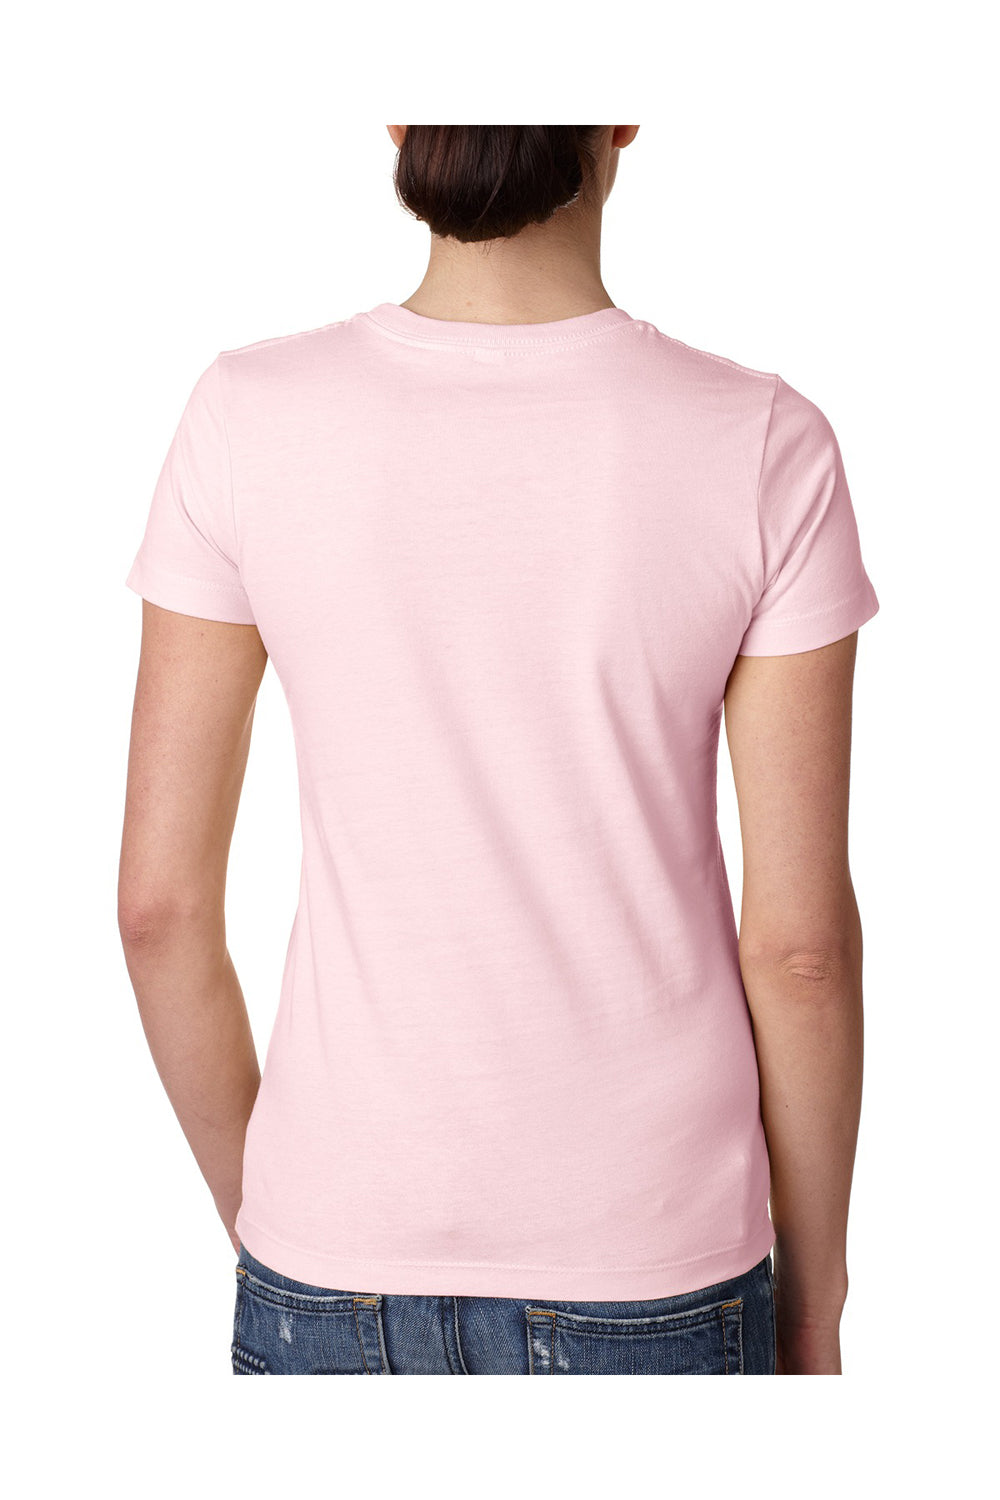 Next Level N3900 Womens Boyfriend Fine Jersey Short Sleeve Crewneck T-Shirt Light Pink Back